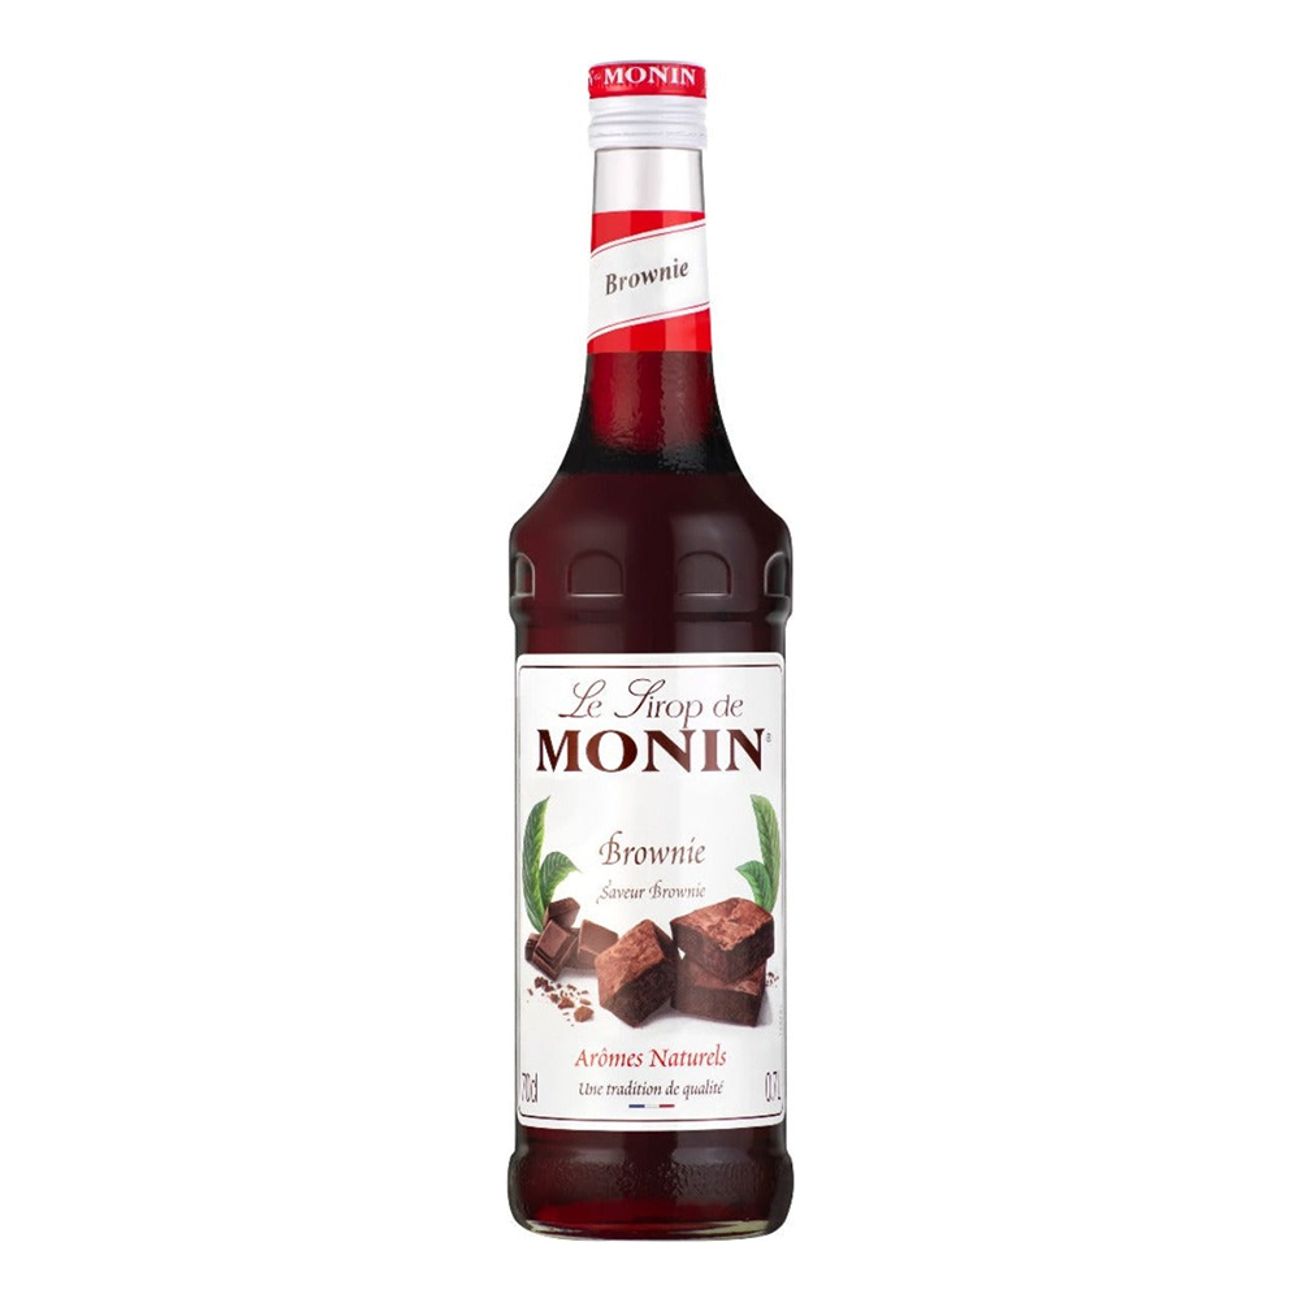 monin-brownie-syrup-71295-2